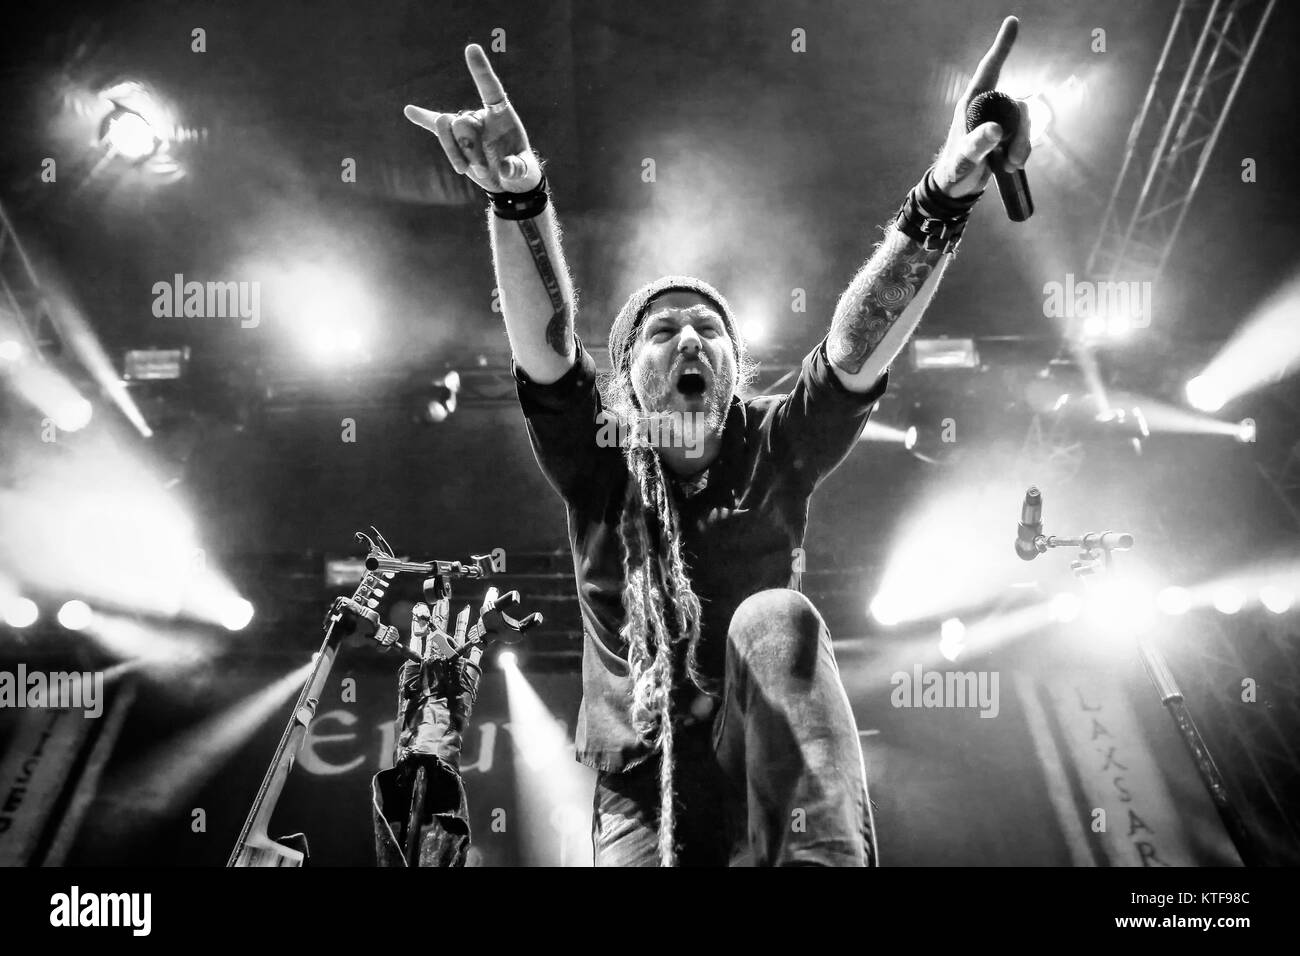 Le groupe de folk metal suisse Eluveitie effectue un concert live au festival de musique norvégienne de tonnes de 2015. Chrigel Glanzmann est chanteur ici vu sur scène. La Norvège, 18/06 2015. Banque D'Images